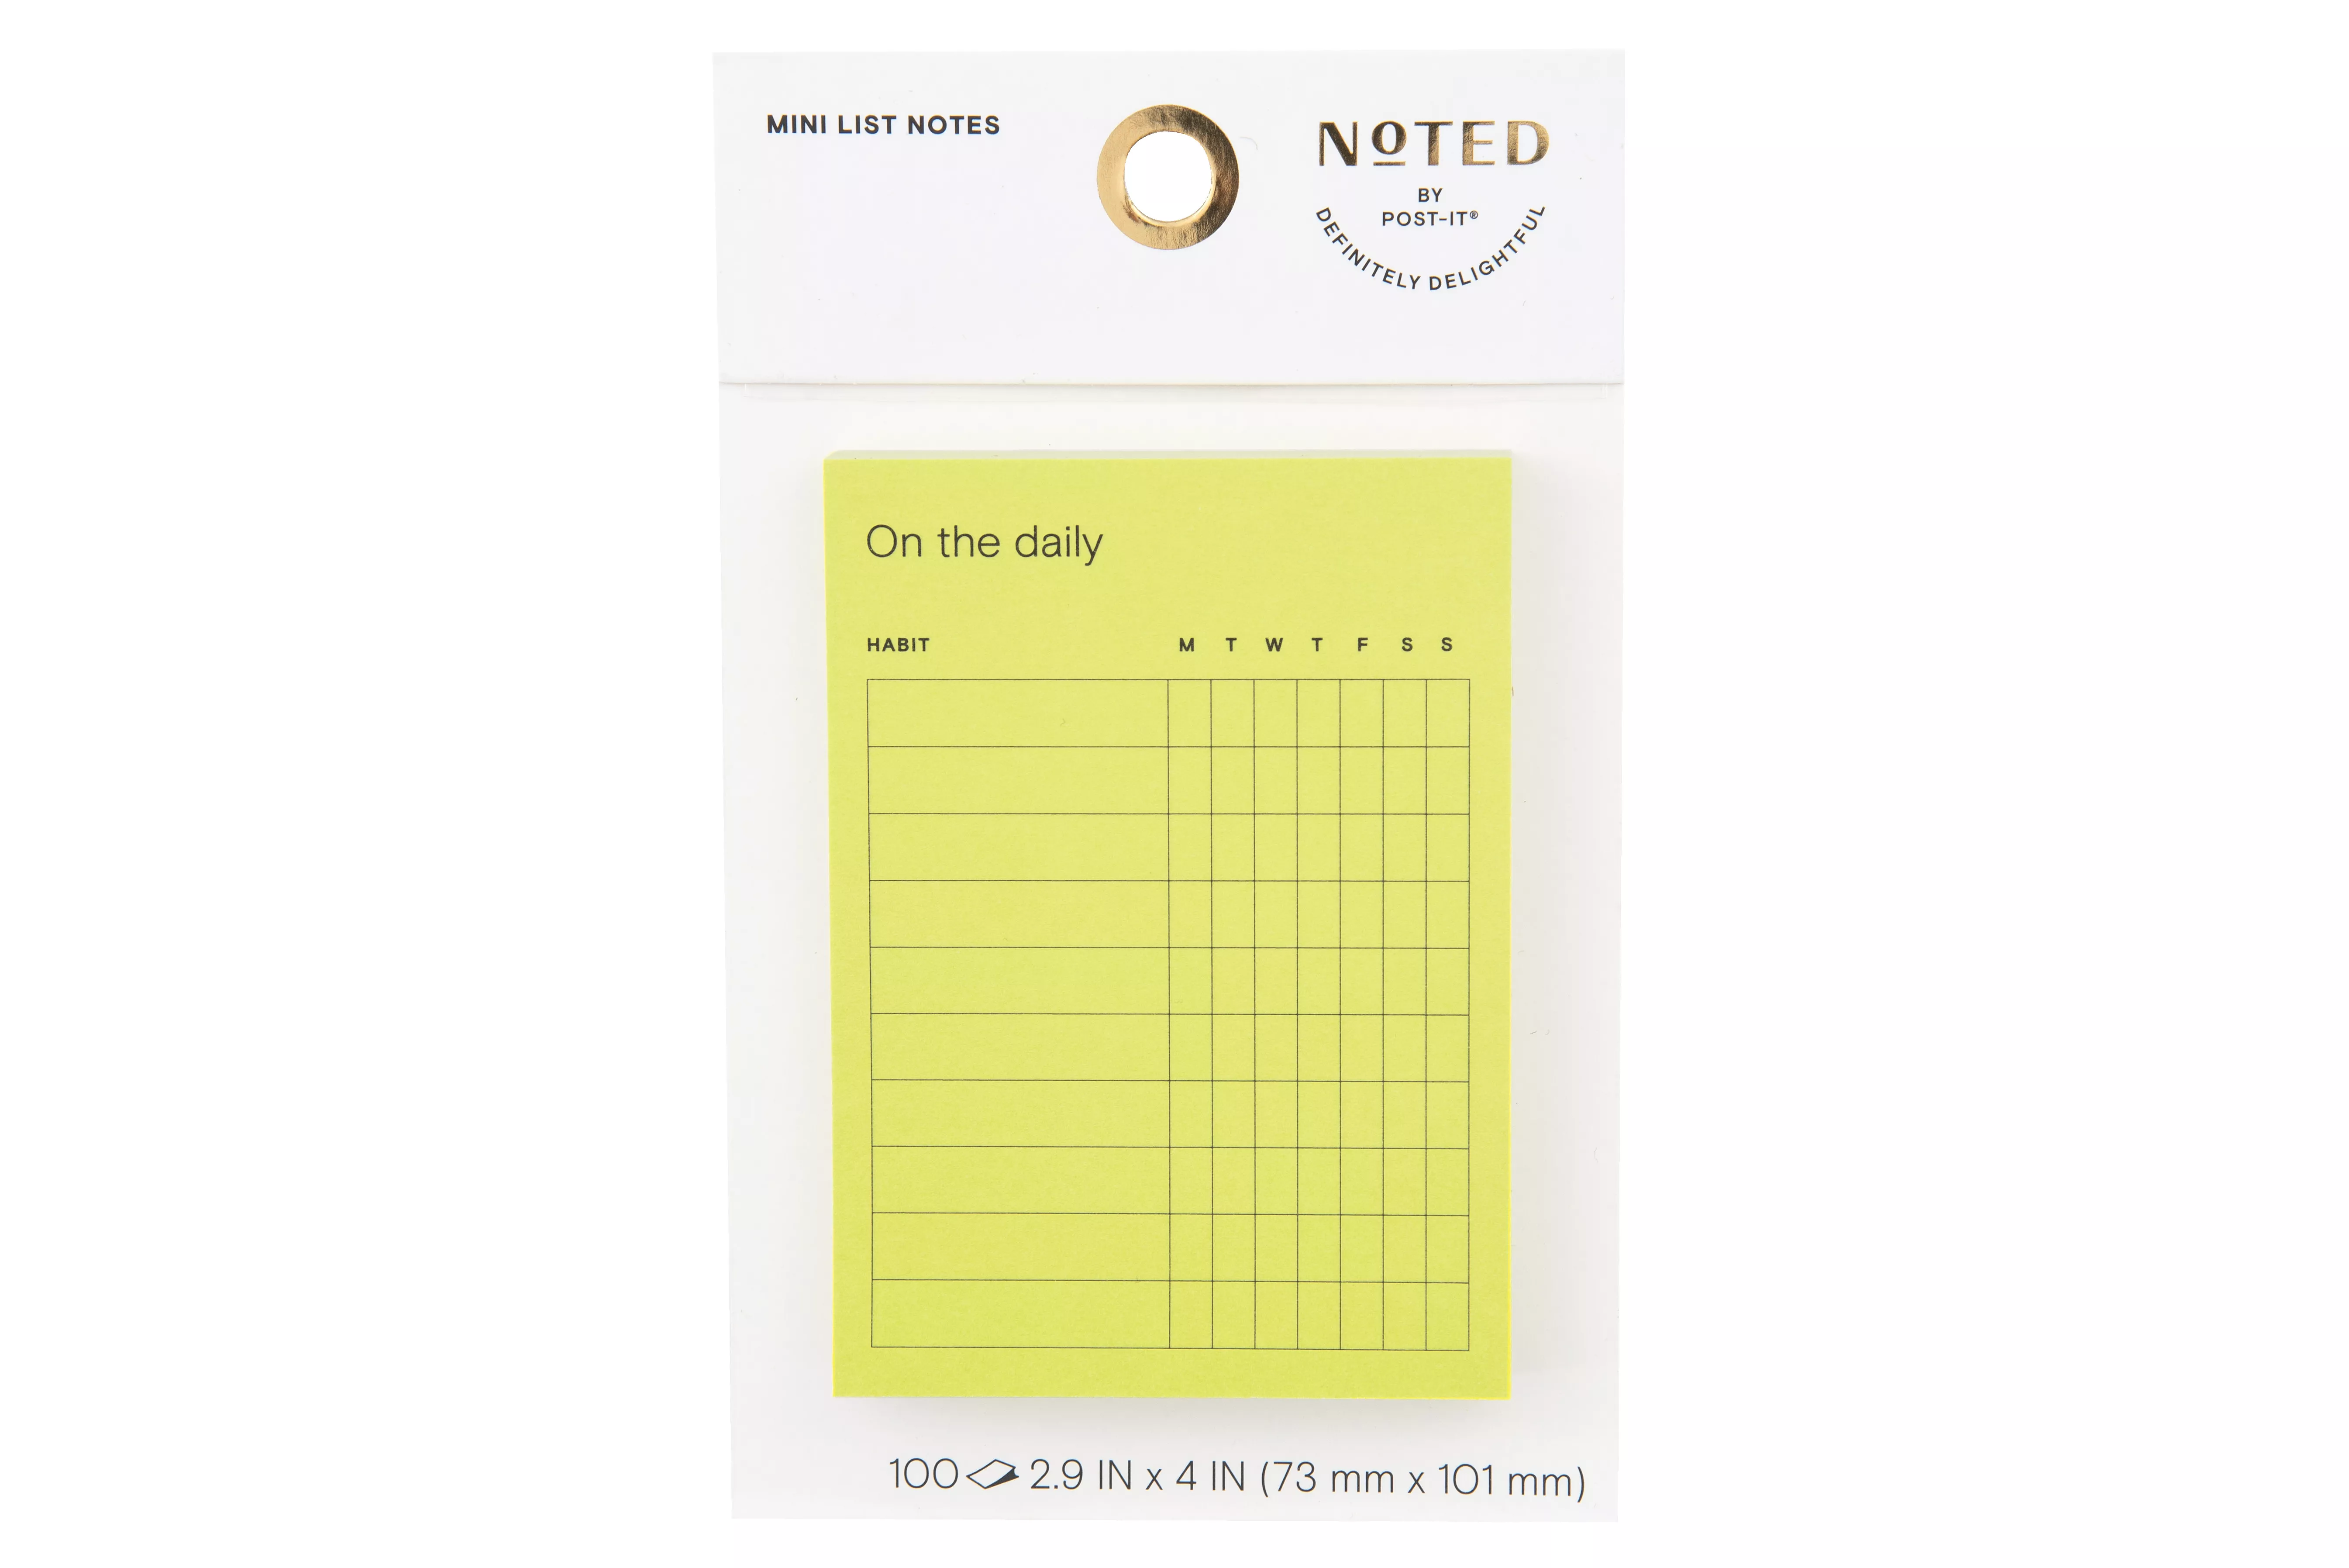 Post-it® Mini List Notes NTD8-34-2, 4 in x 2.9 in (101 mm x 73 mm)